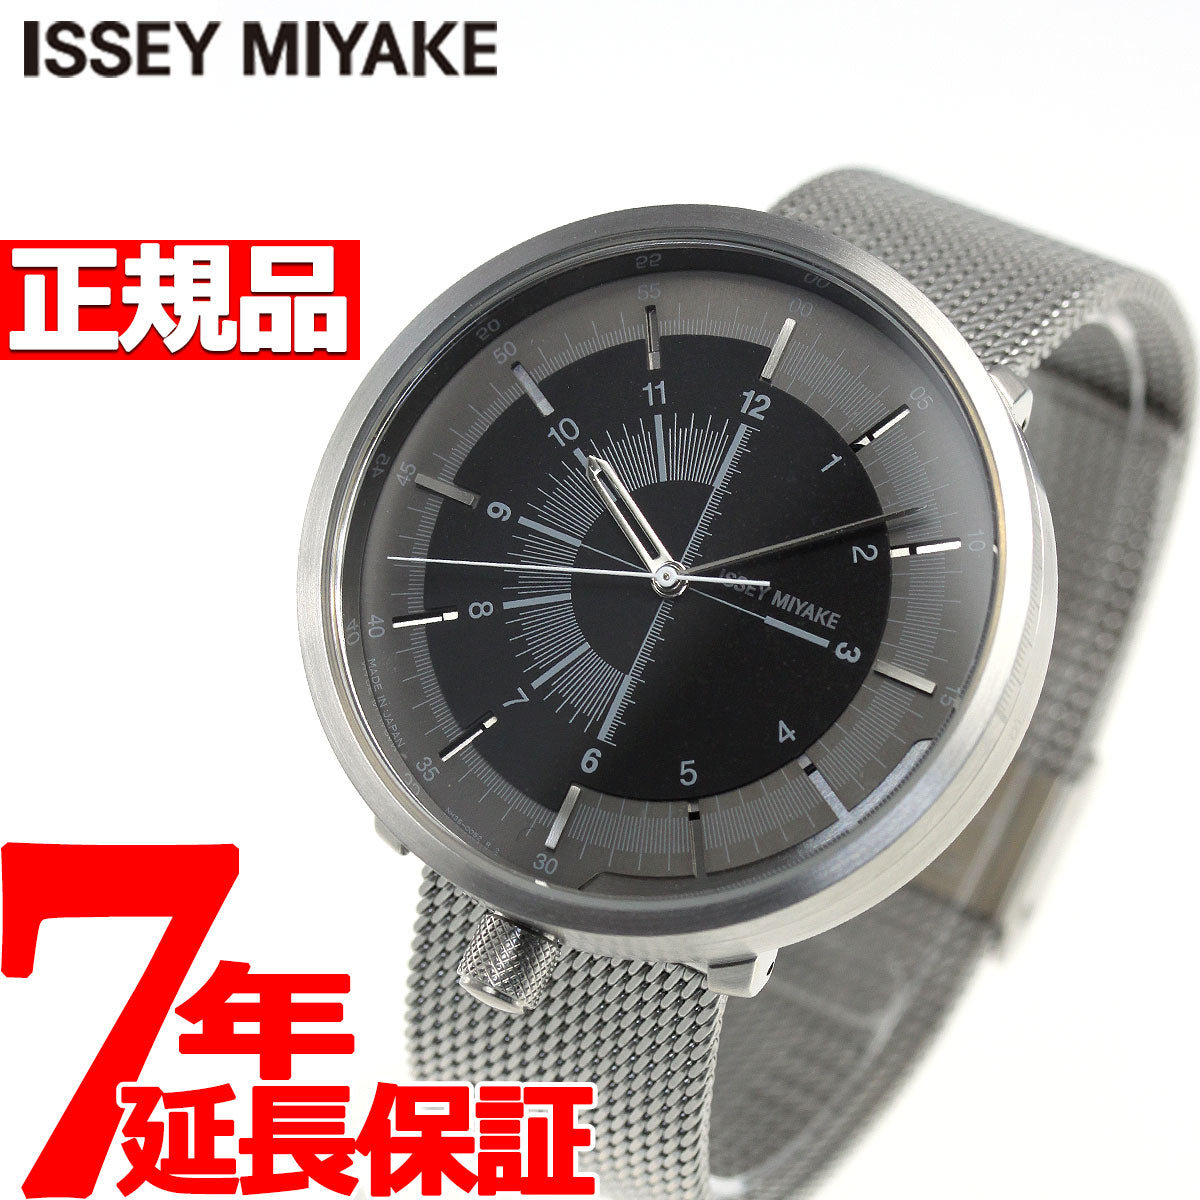 【未使用】イッセイミヤケ 腕時計 1/6 自動巻き ショップ限定モデル 田村奈穂ななゆう腕時計